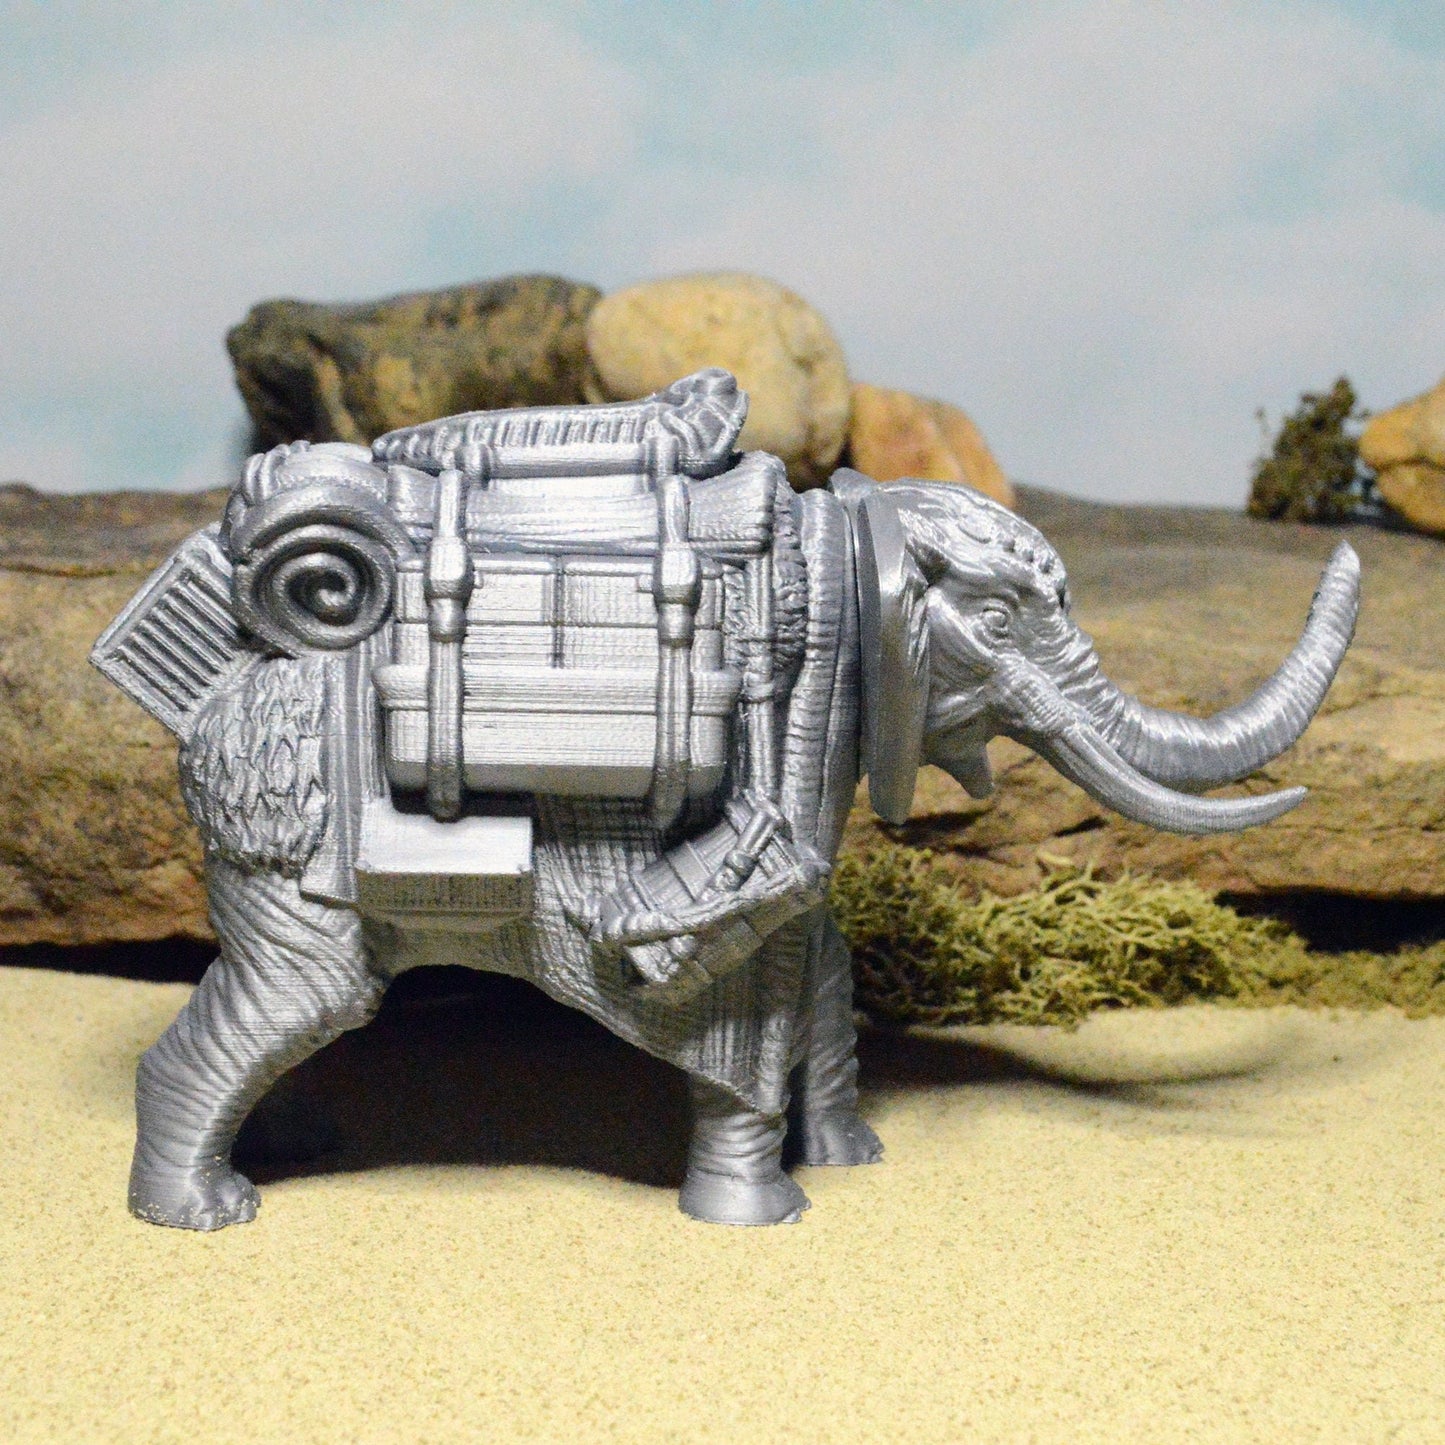 Miniature Pack Elephant 15mm 28mm 32mm for D&D Terrain, DnD Pathfinder Desert, Empire of Scorching Sands